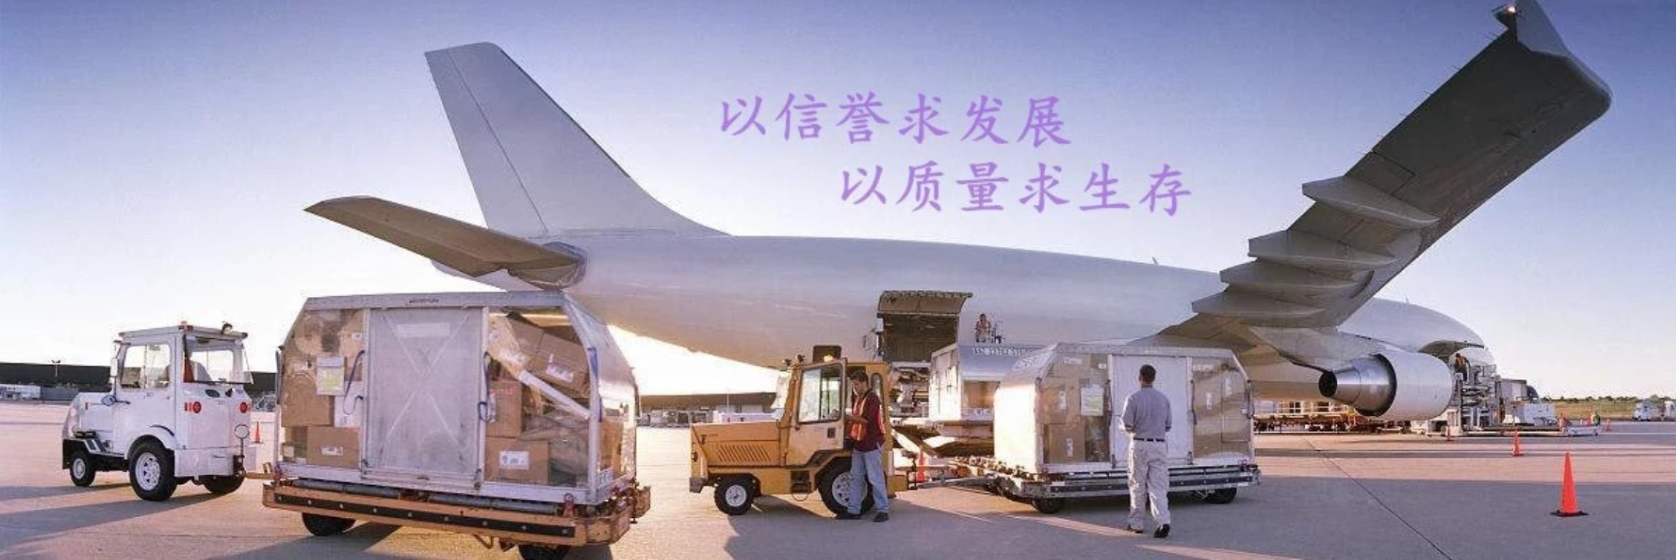 上海到爱沙尼亚海运拼箱集装箱散货拼箱国际海运运输